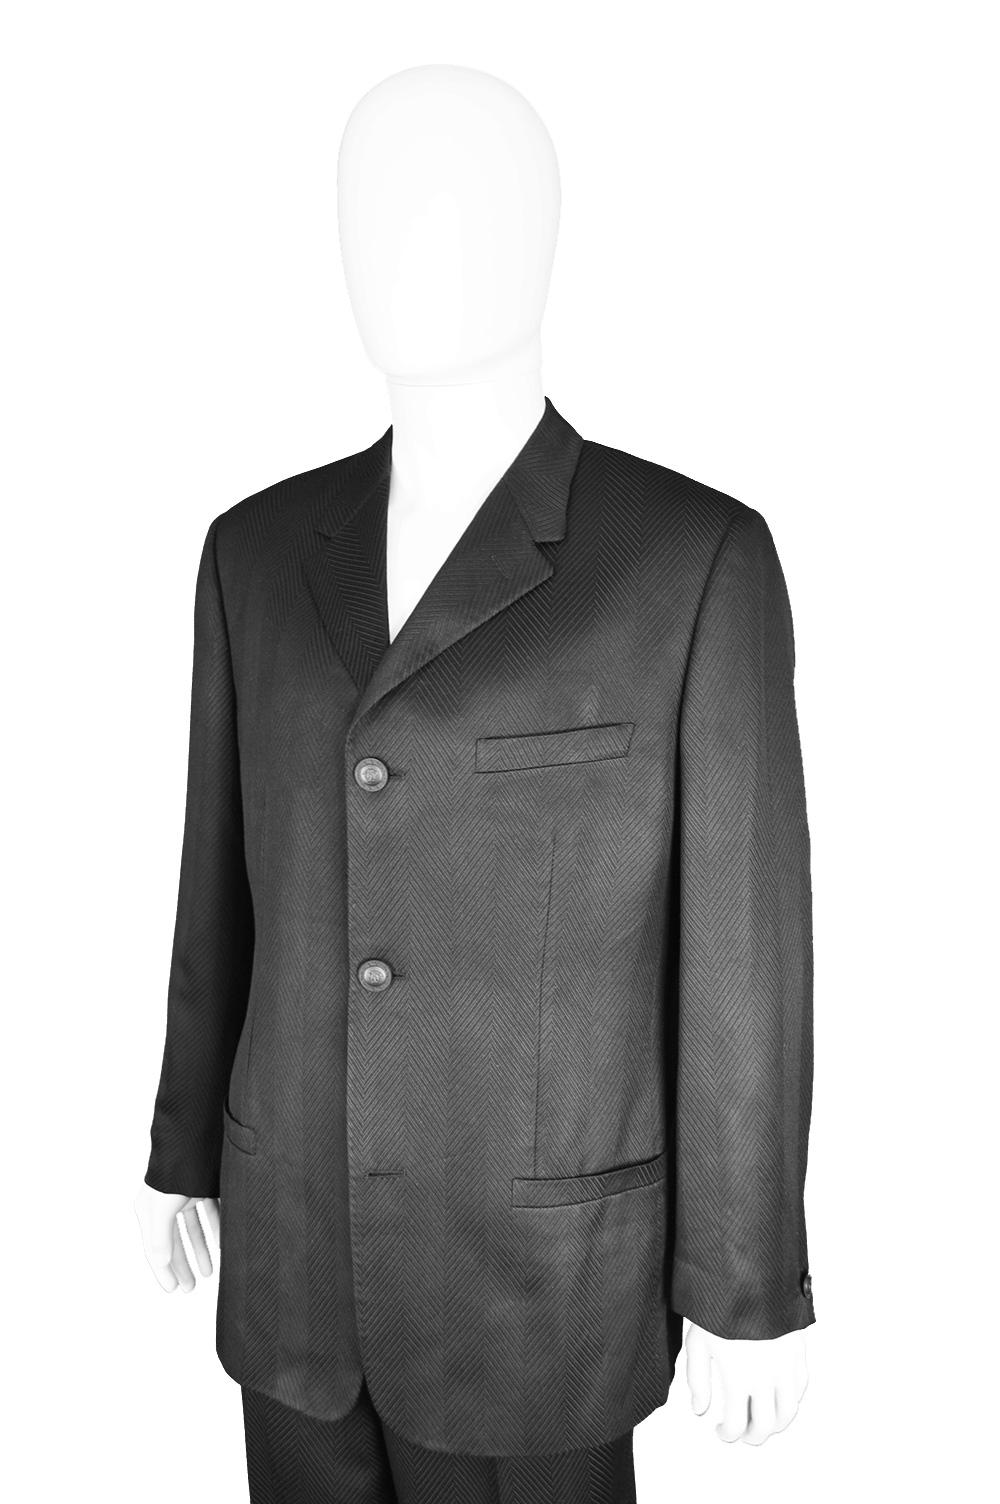 Gianni Versace Men's Black 100% Silk Jacquard 2 Piece Vintage Suit, 1990s For Sale 1